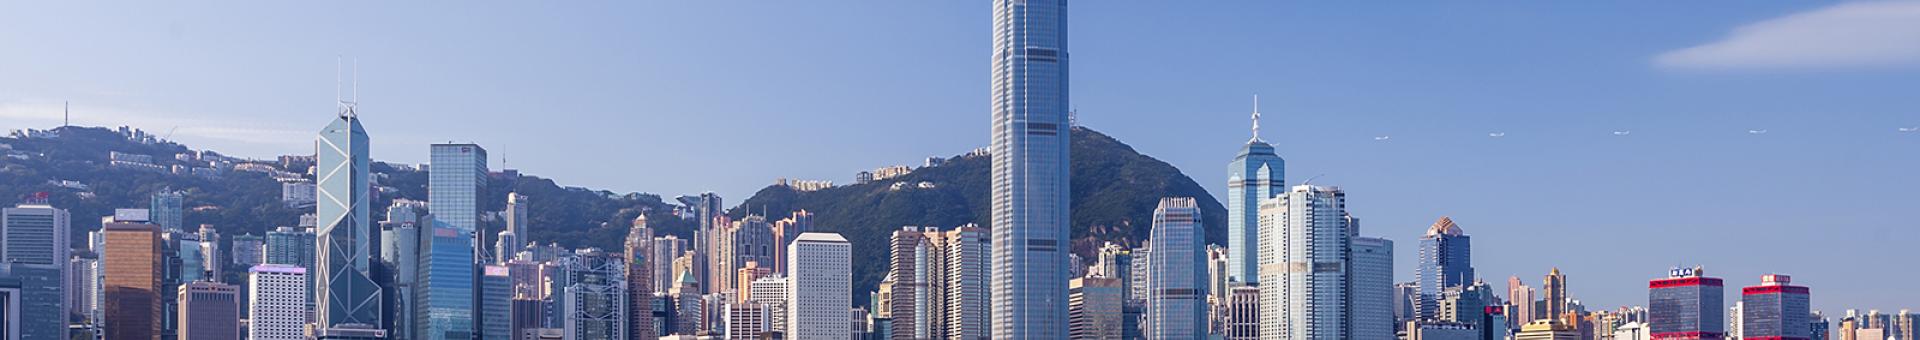 Ignore Hong Kong crisis at your peril